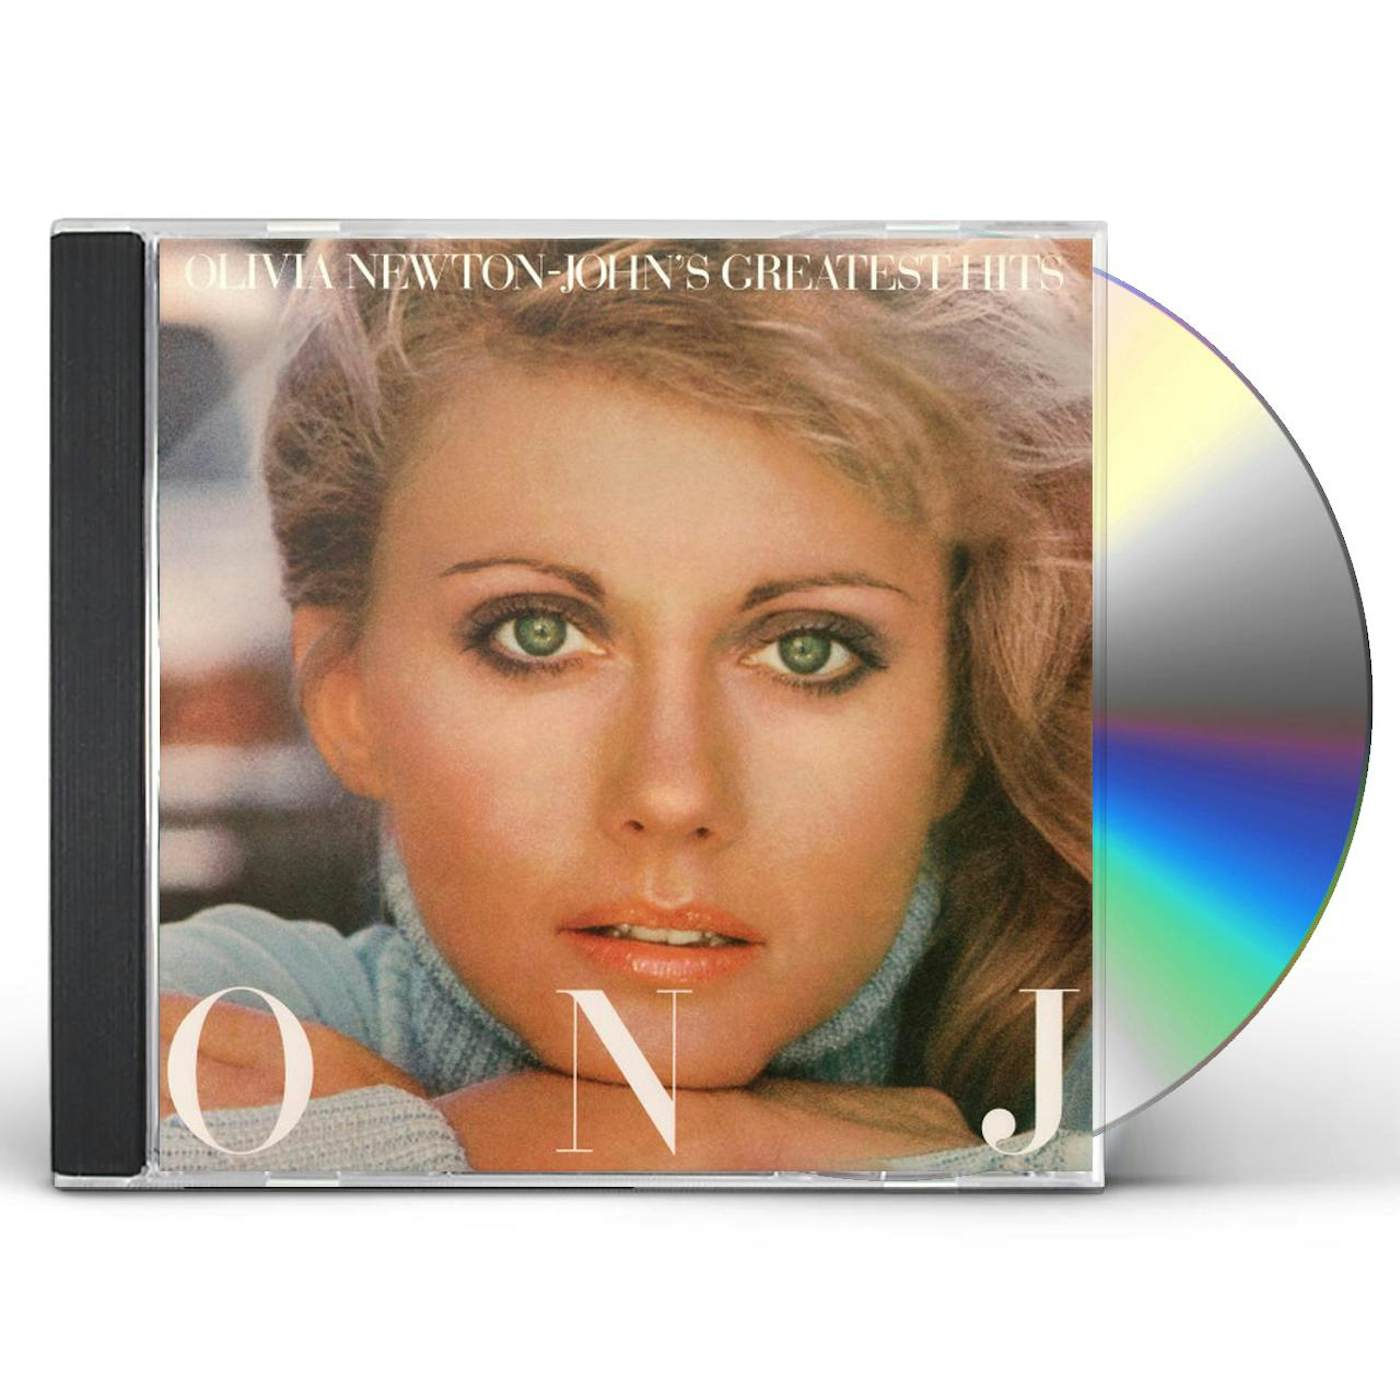 OLIVIA NEWTON-JOHN'S GREATEST HITS CD